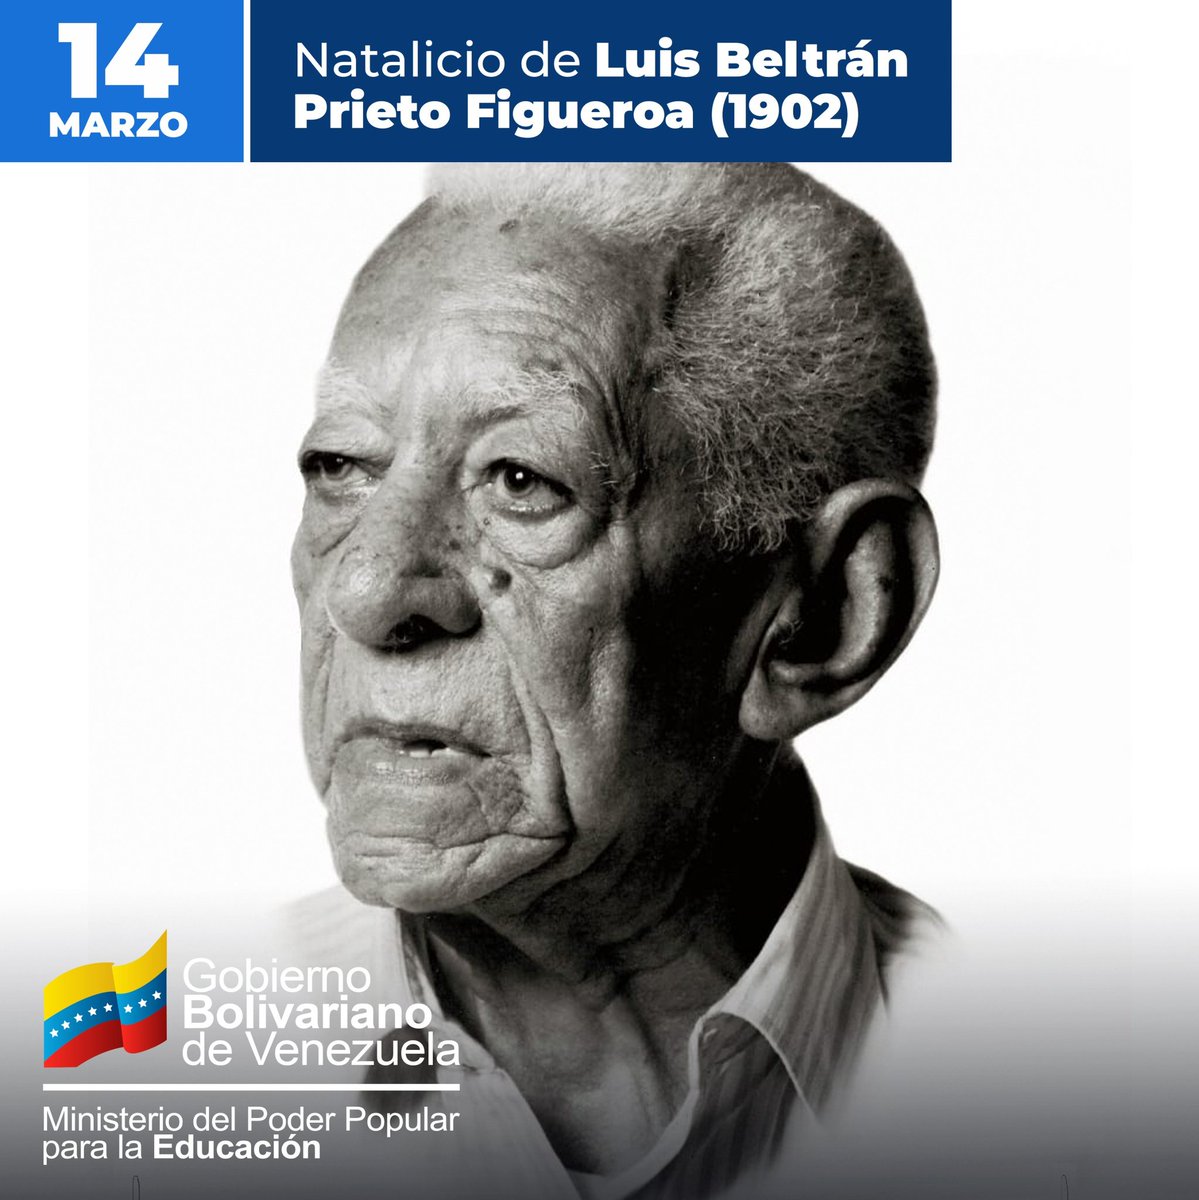 Conmemoramos 122 años del natalicio de nuestro maestro, quien concibió la educación como la formación de conciencia y espíritu. Su legado inspira el crecimiento de Venezuela. #AvanzandoPorVenezuela @NicolasMaduro @_LaAvanzadora